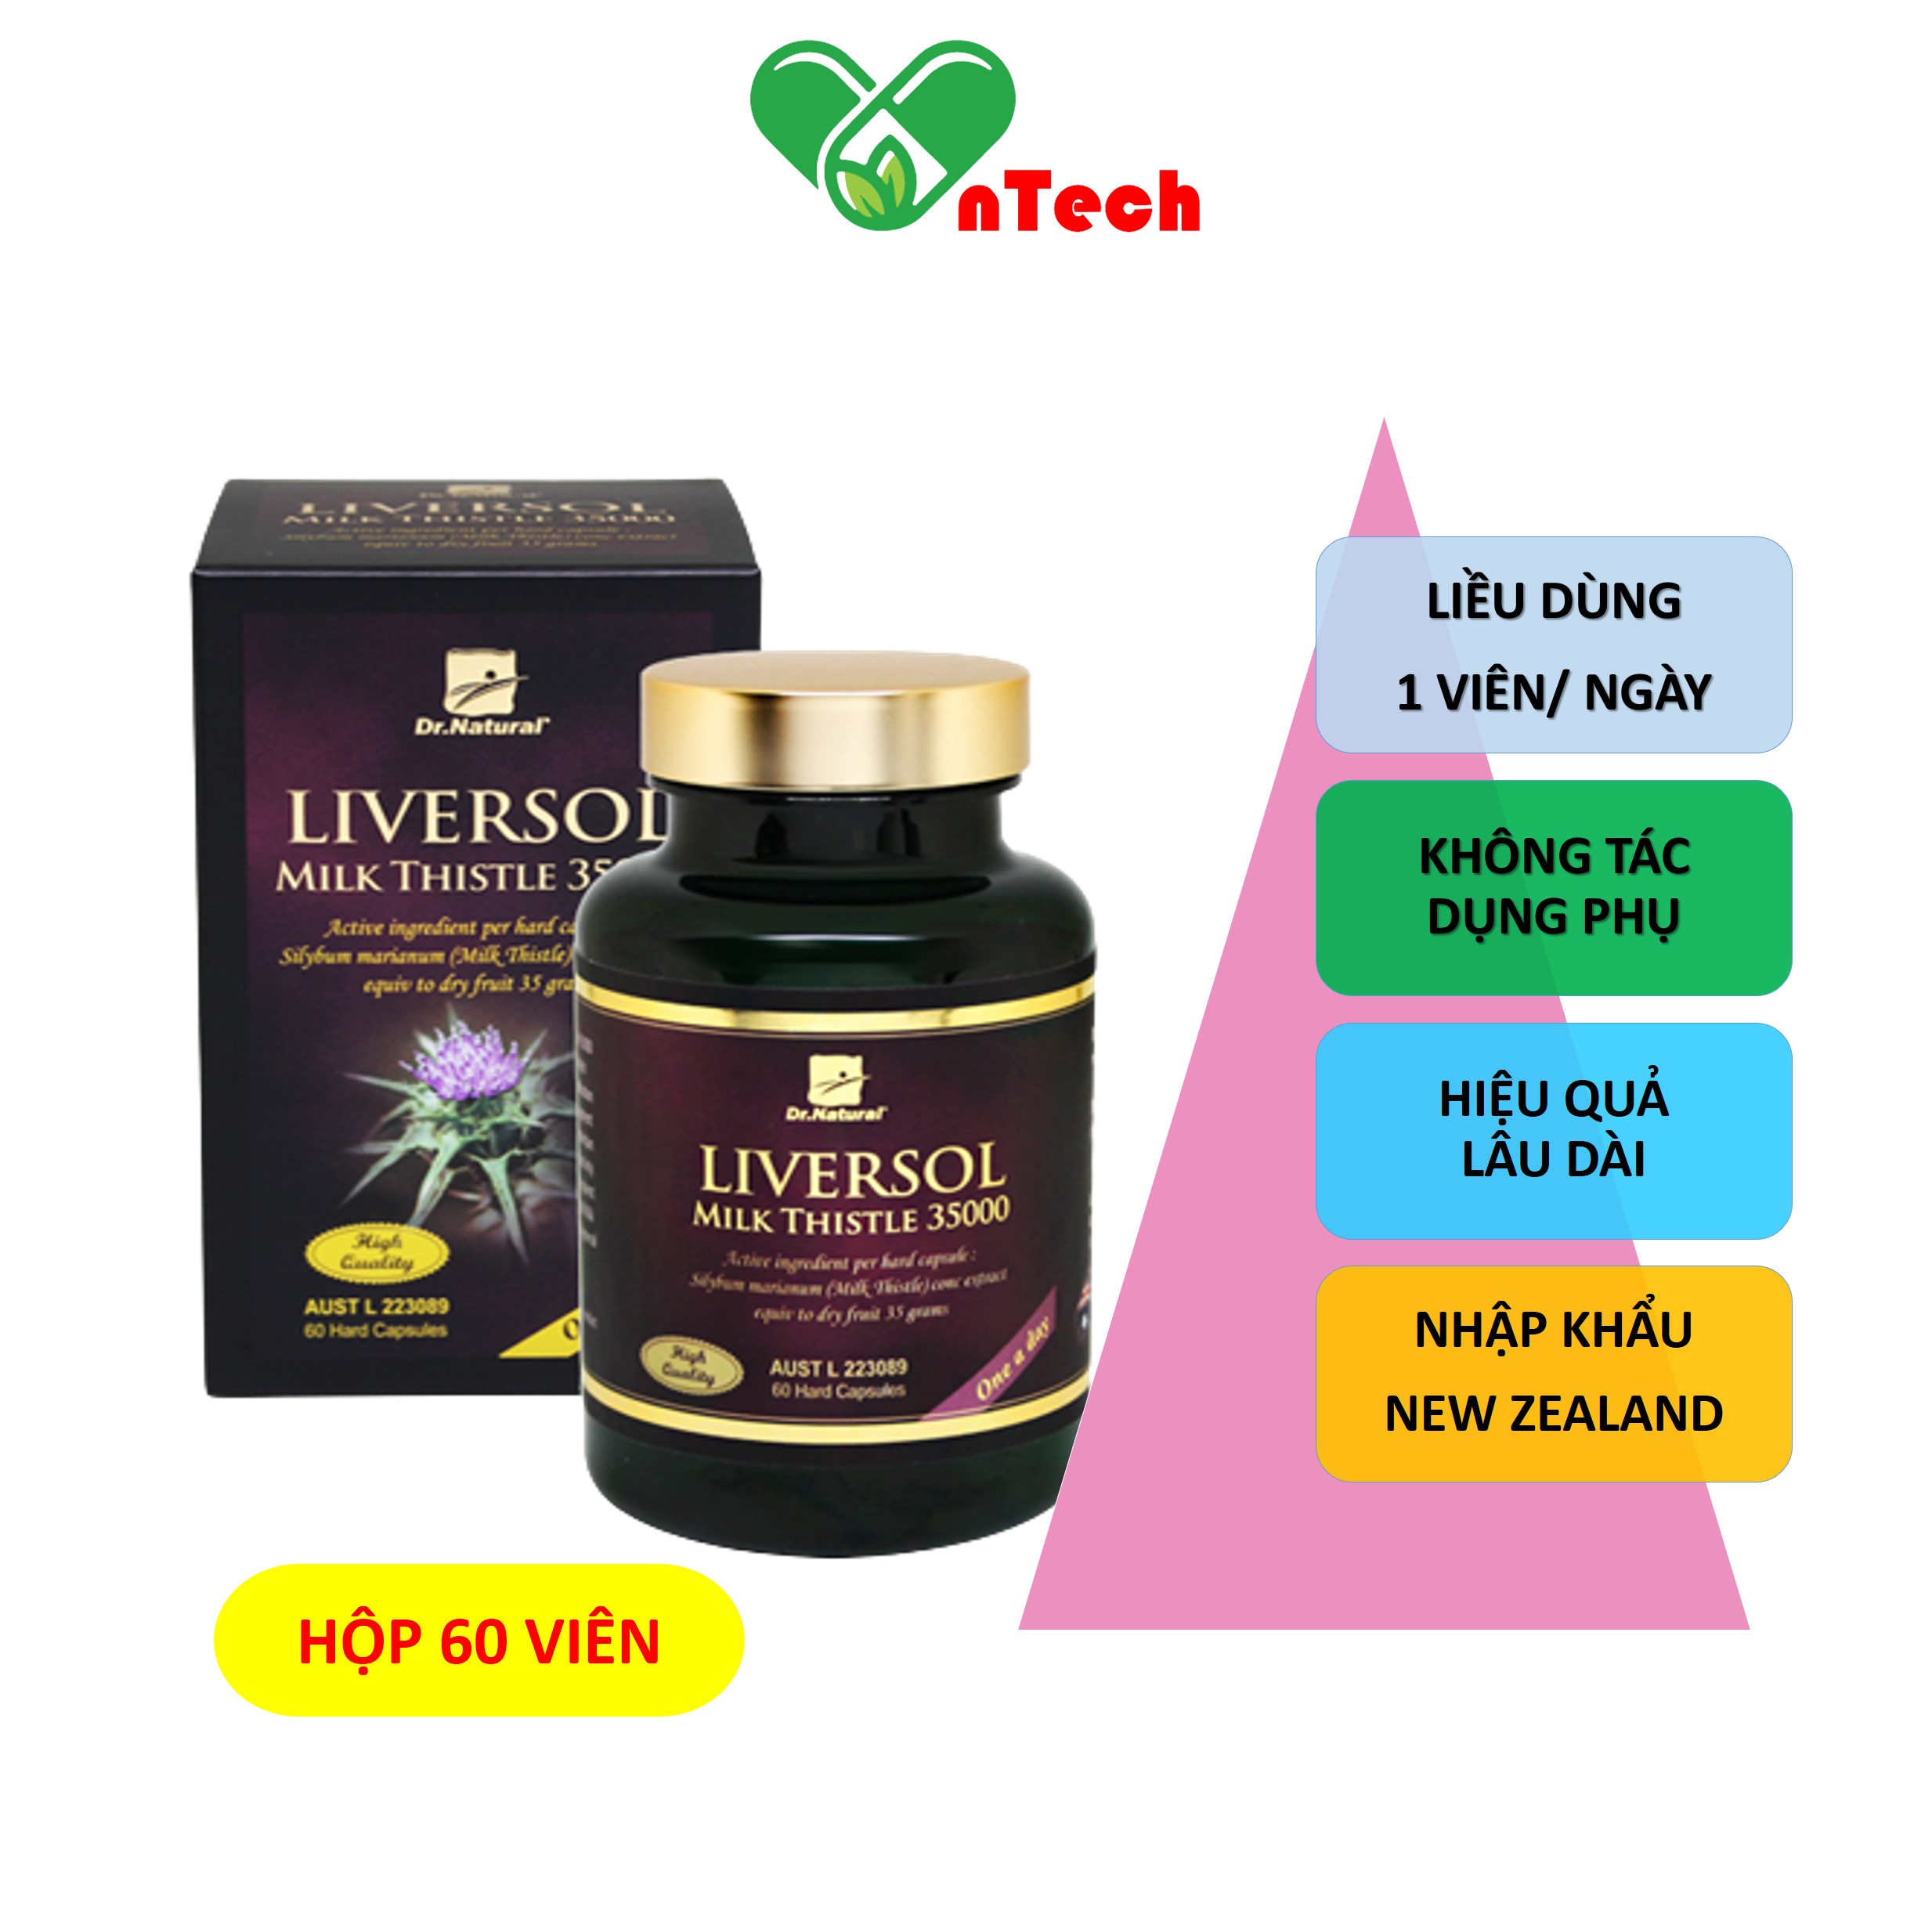 Viên uống bổ gan LiverSol Milk Thistle 35000 Tăng cường chức năng gan mát gan giải độc bảo vệ tế bào gan hàng nhập khẩu